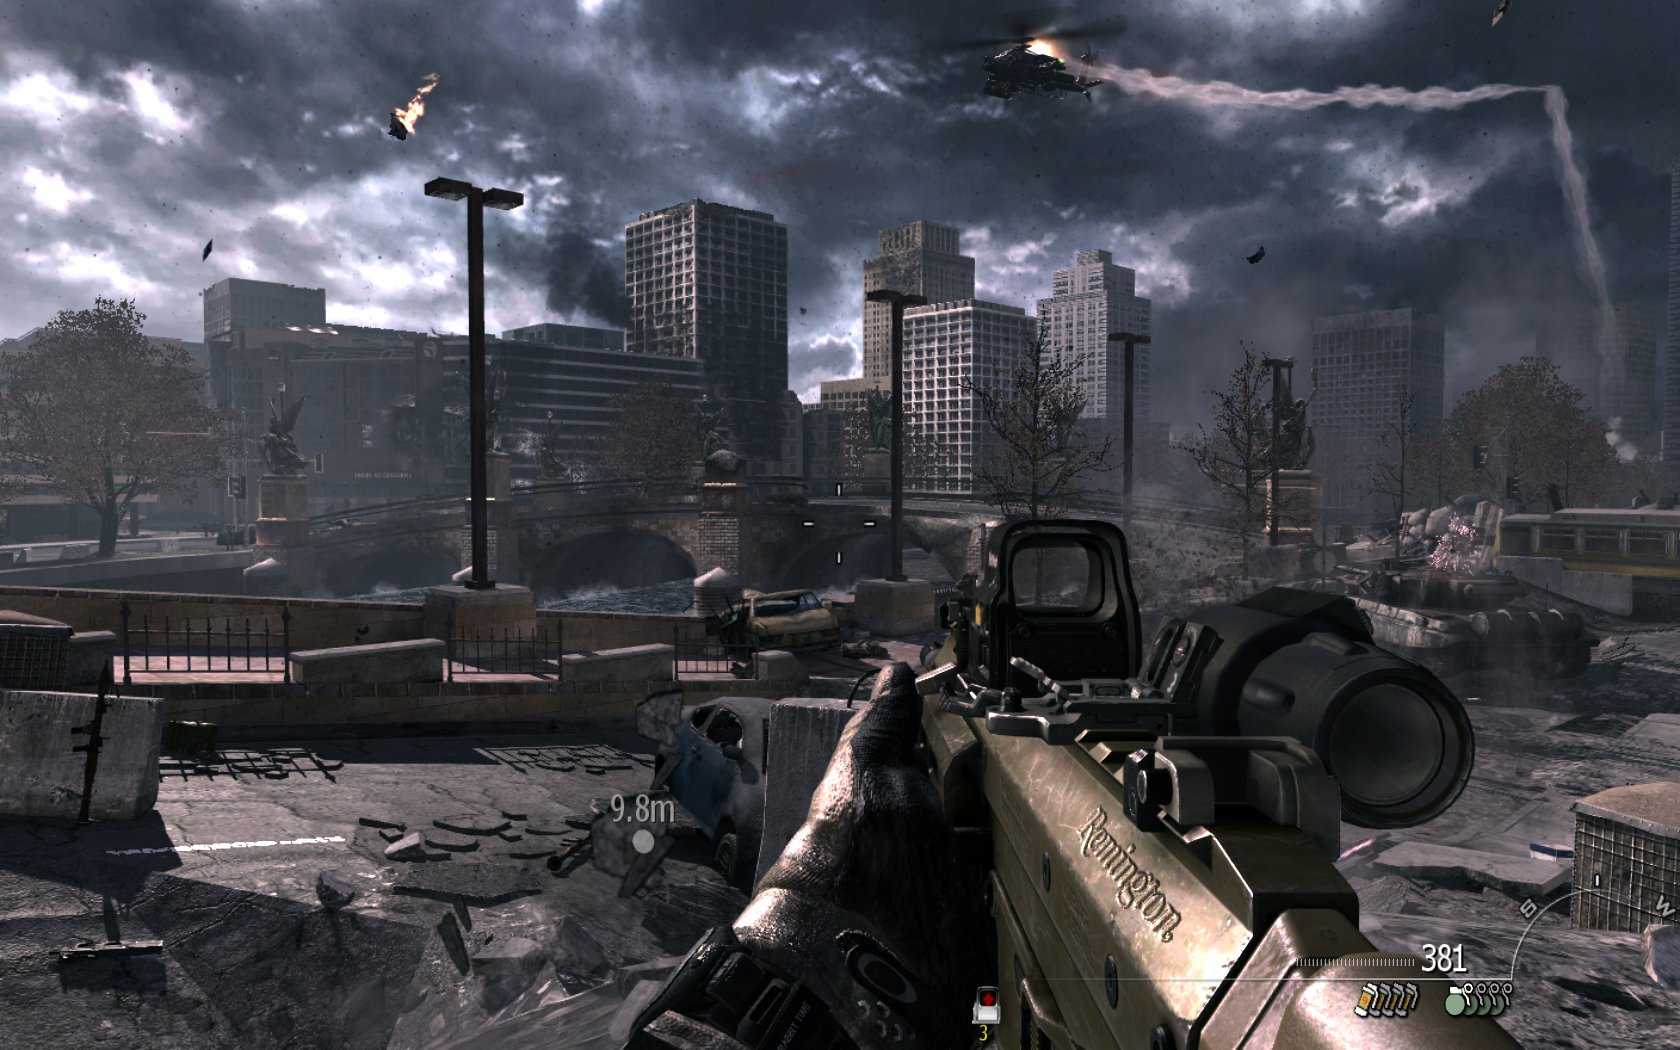 Call of duty 4 3. Call of Duty: Modern Warfare 3. Call of Duty Модерн варфаер 3. Call of Duty 3 Modern Warfare 3. M4 Cod mw3.